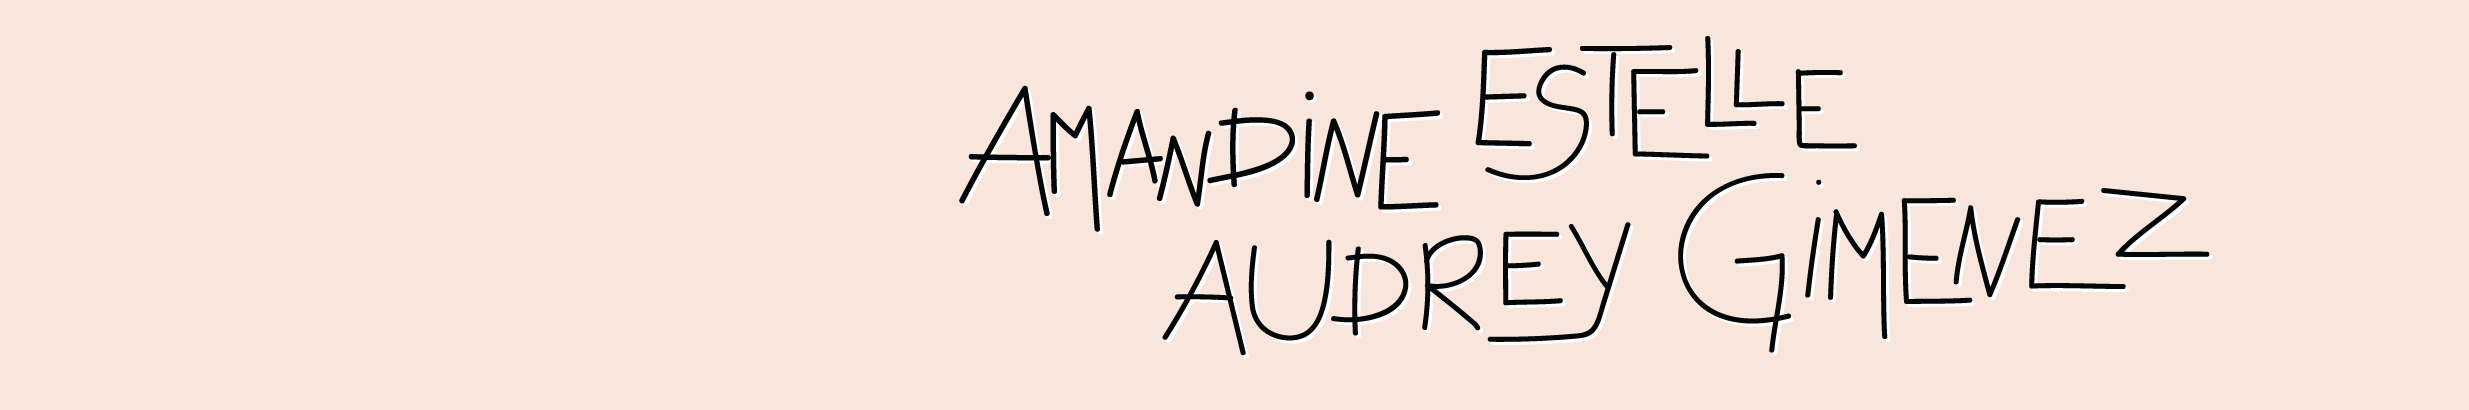 Amandine, Estelle, Audrey's profile banner